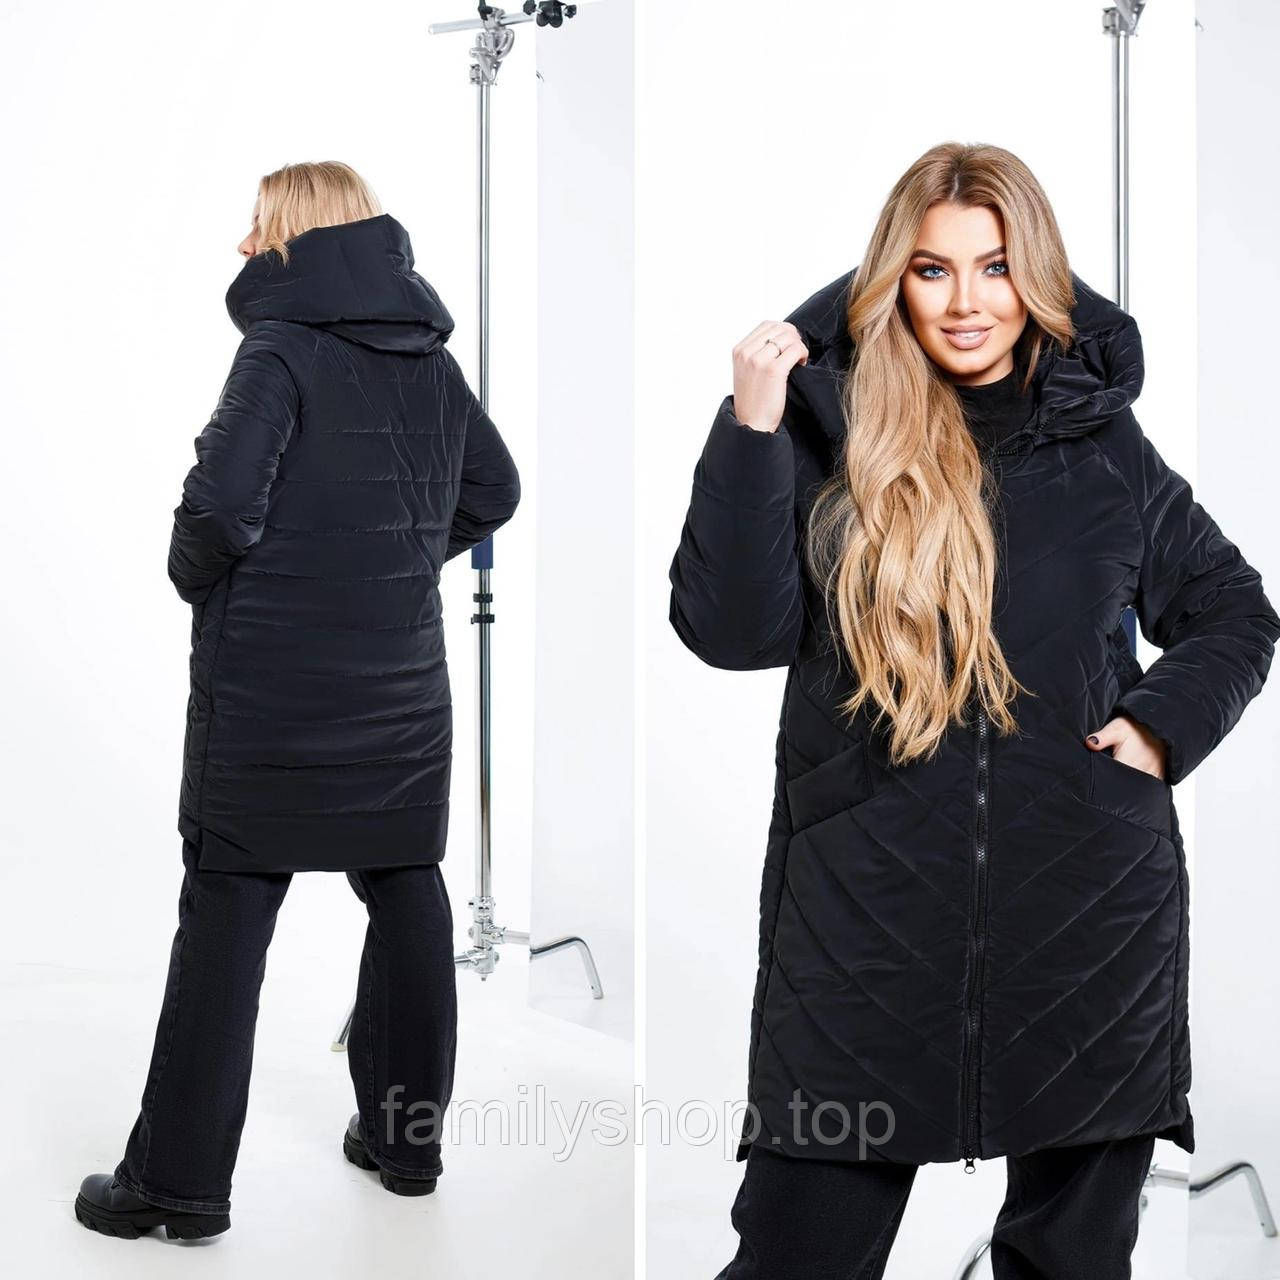 Тепла зимова куртка жіноча на силіконі стьобана з капюшоном, великий розмір 50/52, 54/56 у різних кольорах